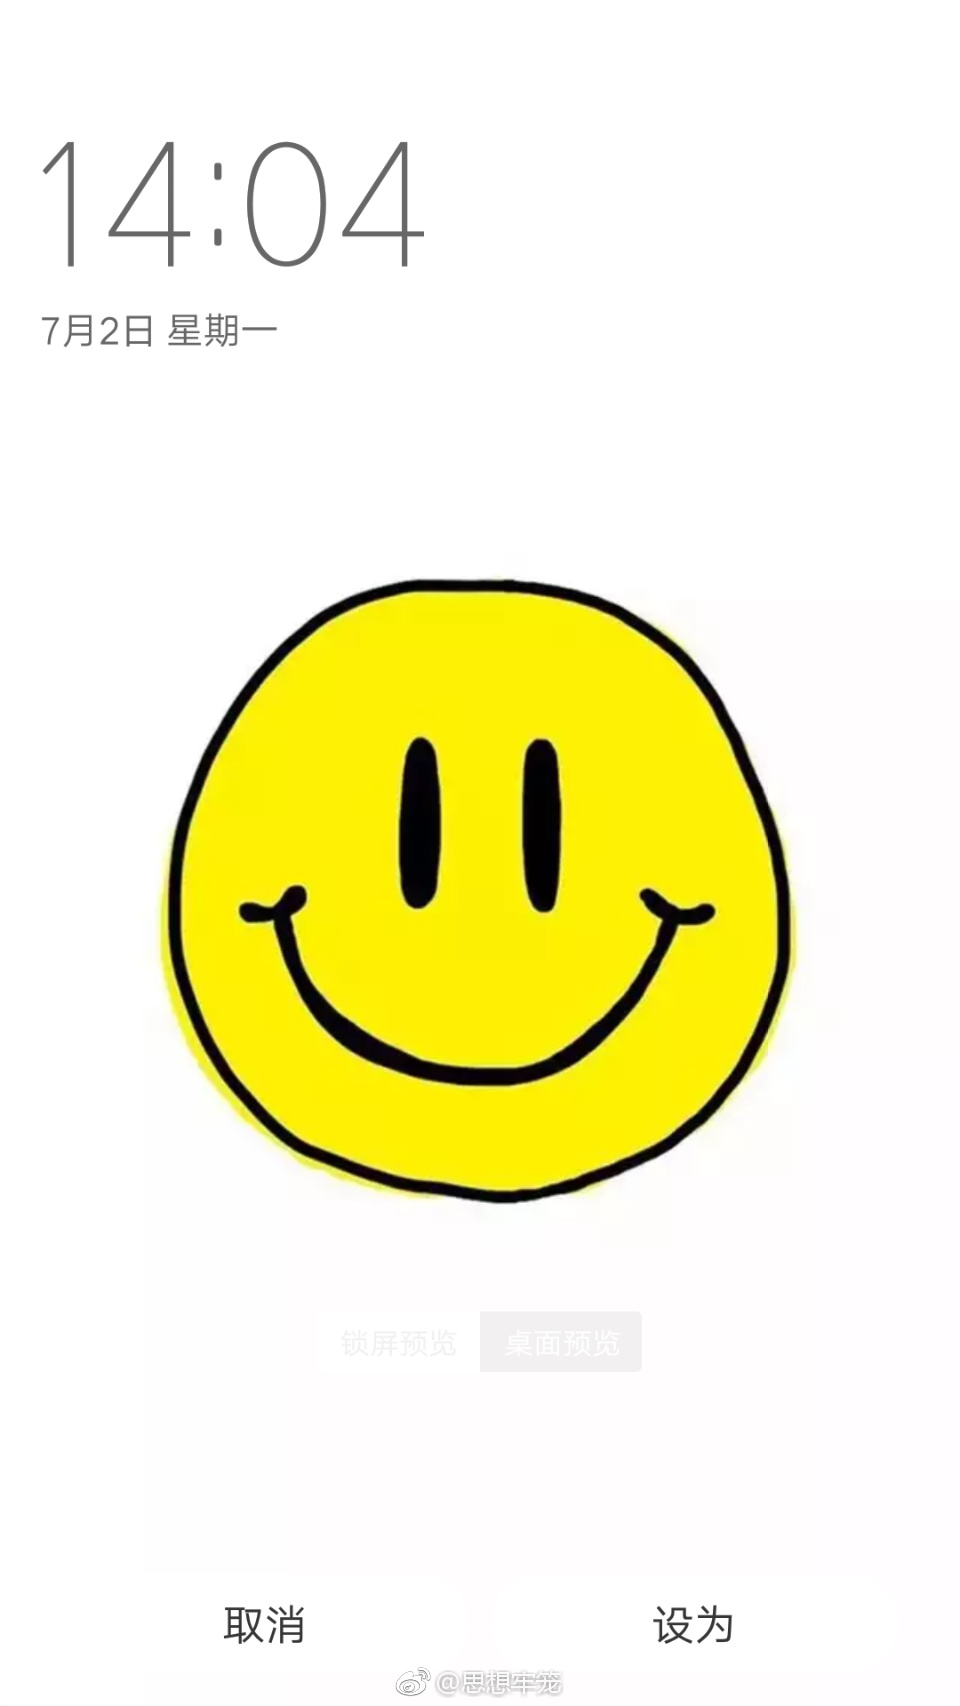 一组笑脸壁纸:愿你每天都有好心情.原图自取